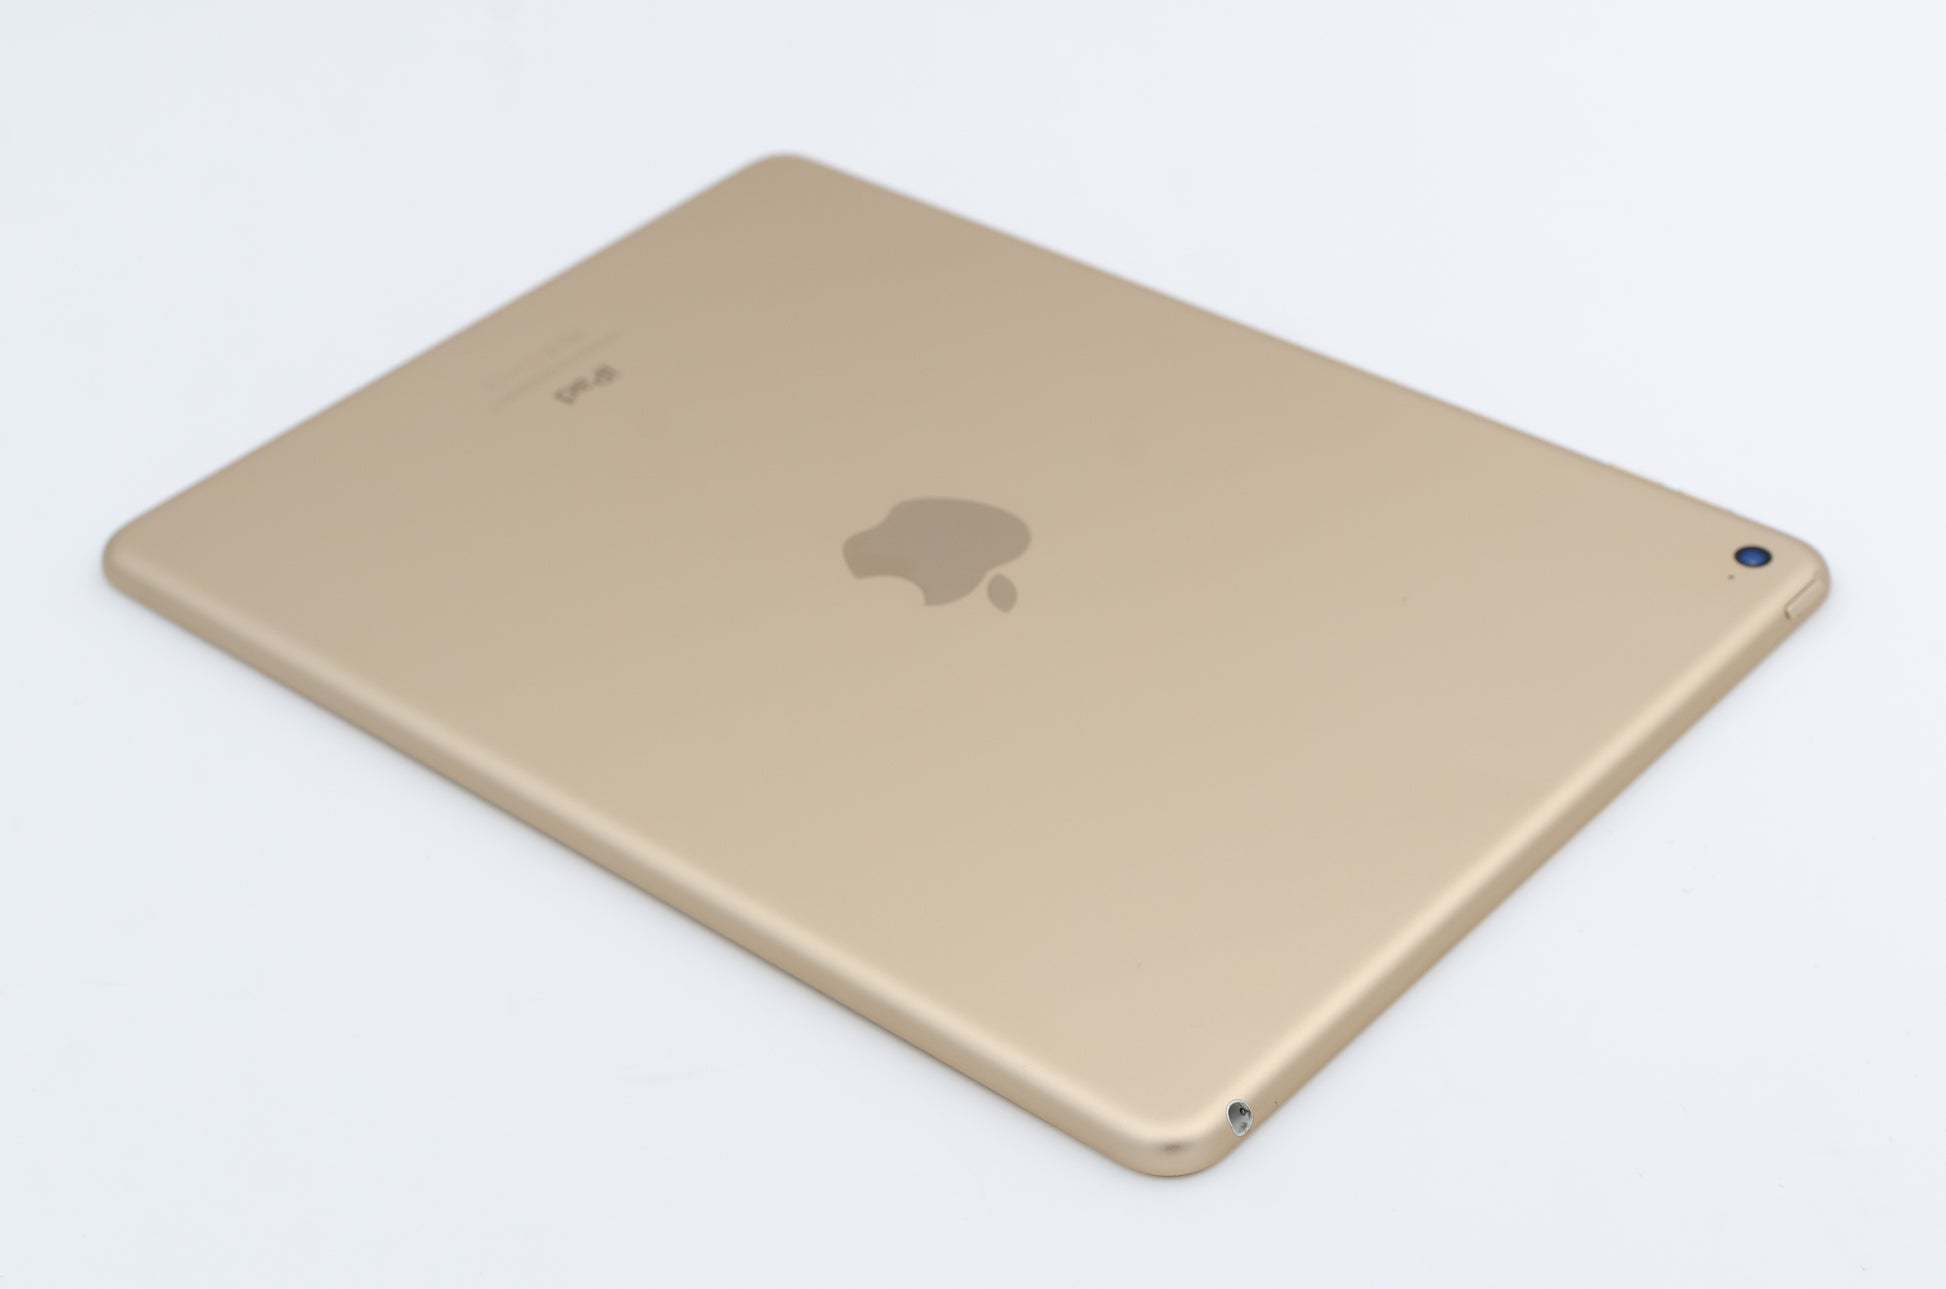 apple-2014-9.7-inch-ipad-air-2-a1566-gold/white-4